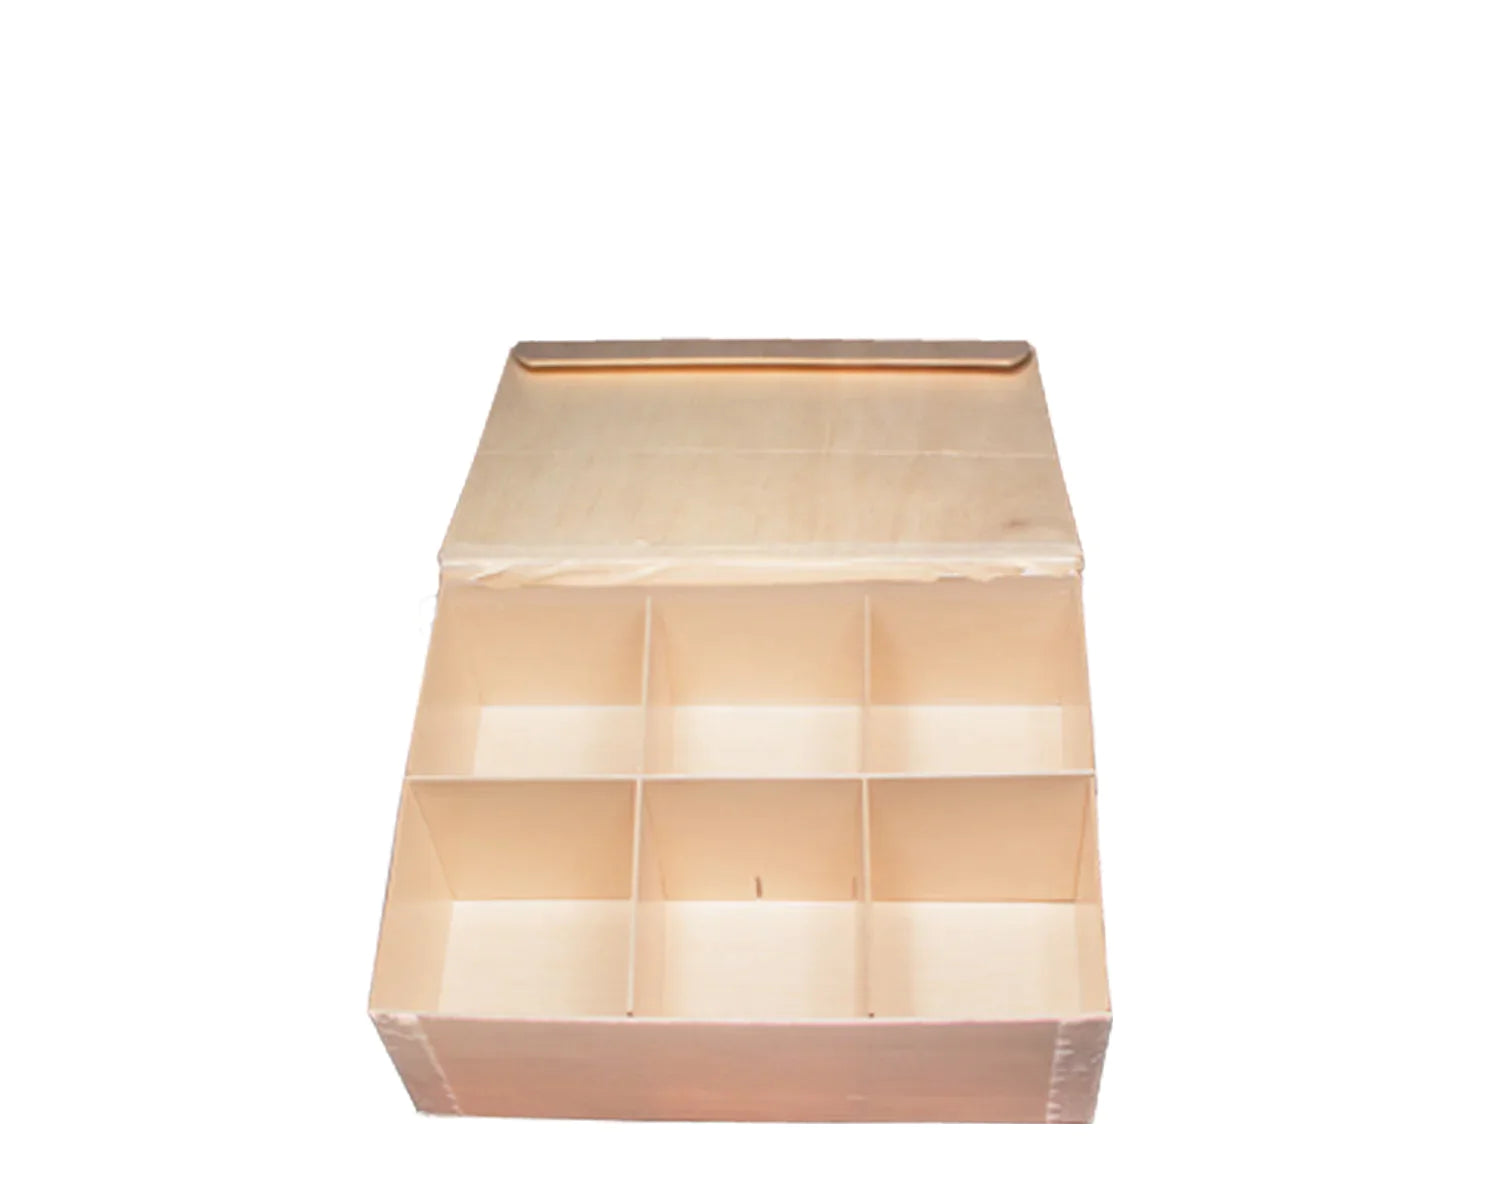 Press Board Bento Box